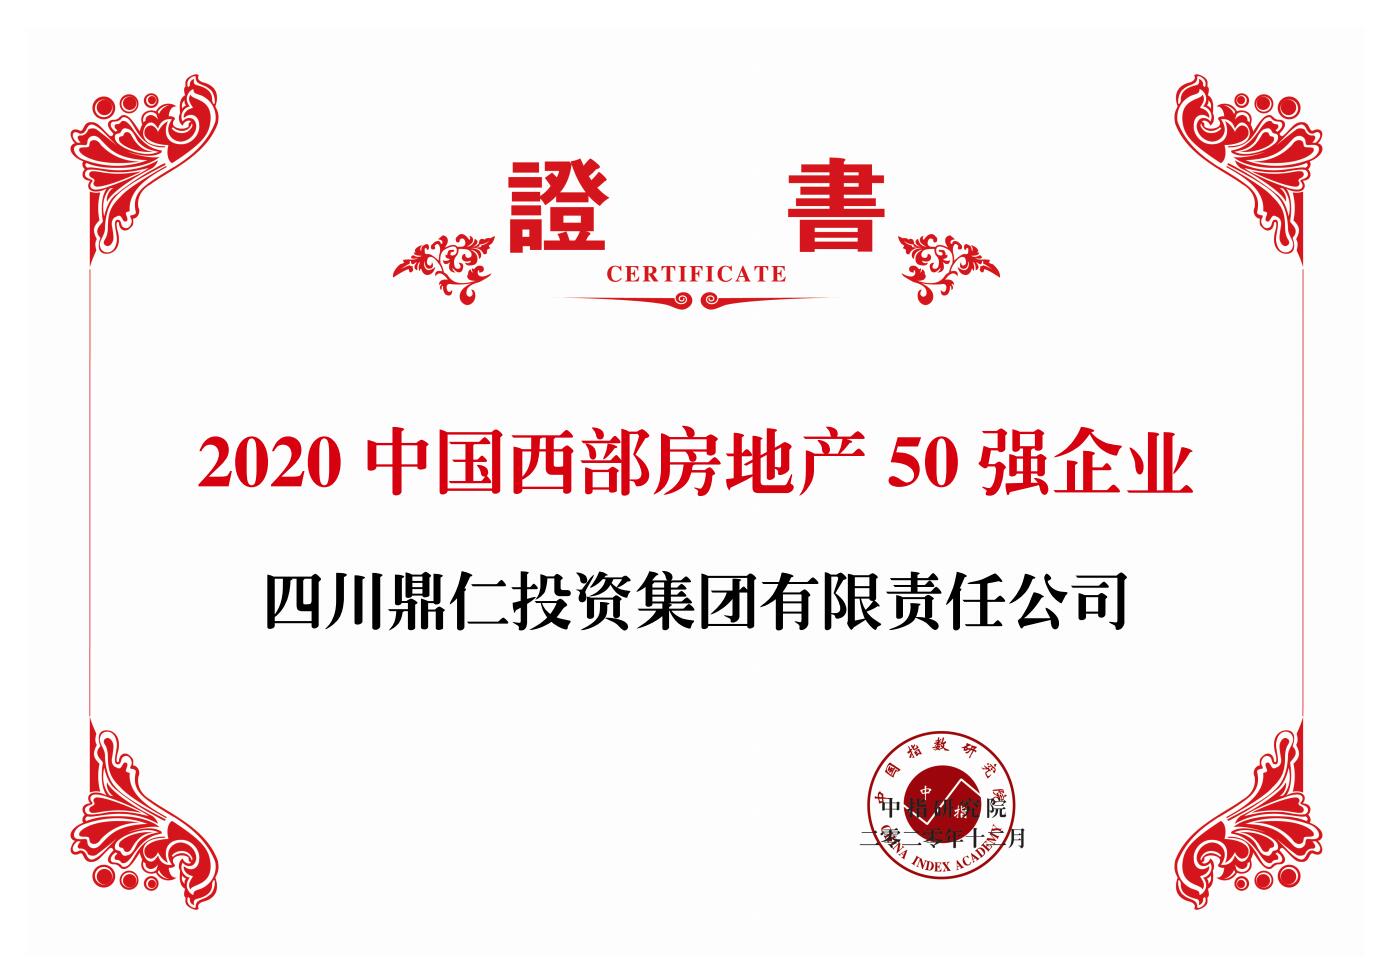 2020年12月，鼎仁集团荣登2020年中国房地产西部50强榜单，排名第32位。